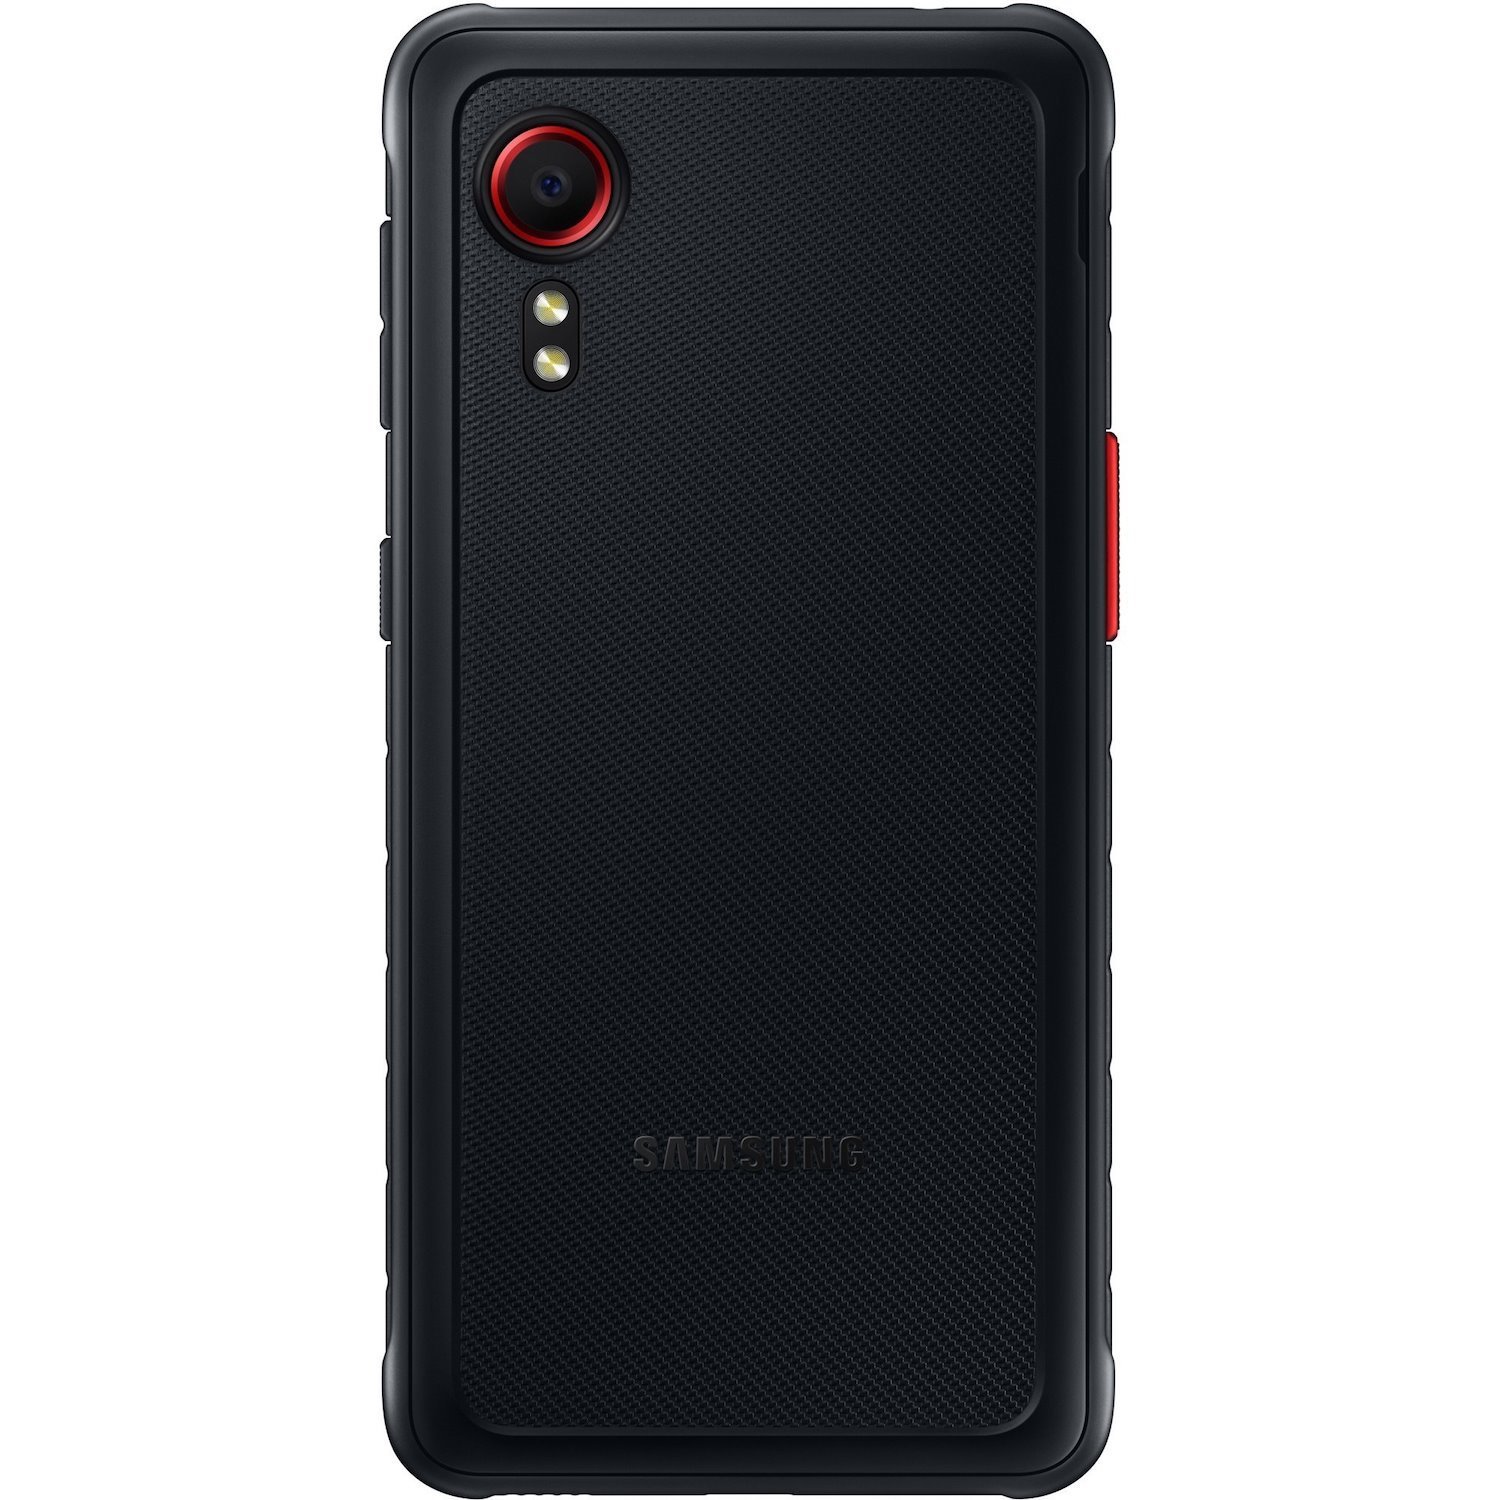 Samsung Galaxy XCover 5 SM-G525F/DS 64 GB Smartphone - 5.3" TFT LCD HD+ 1480 x 720 - Octa-core (Cortex A55Quad-core (4 Core) 2 GHz + Cortex A55 Quad-core (4 Core) 2 GHz - 4 GB RAM - Android 10 - 4G - Black